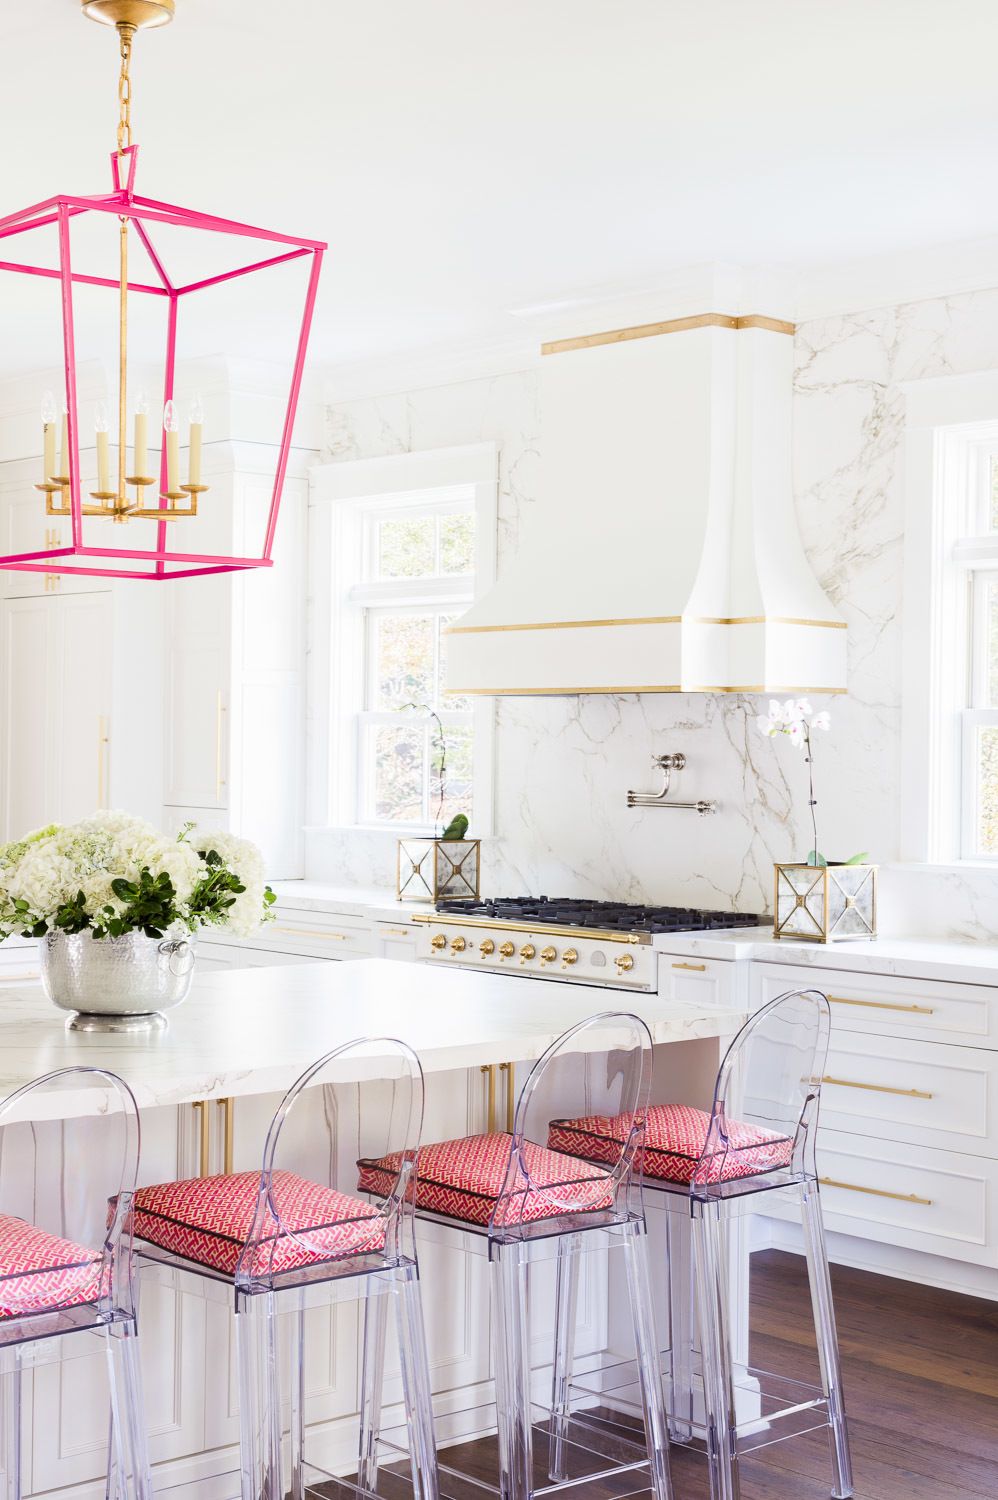 Giữa một phòng bếp lựa chọn tông màu trắng làm chủ đạo thì một chút sắc hồng từ đèn treo ấn tượng cho đến những chiếc đệm trên ghế ngồi trong suốt cũng khiến chúng trở nên vô cùng nổi bật.